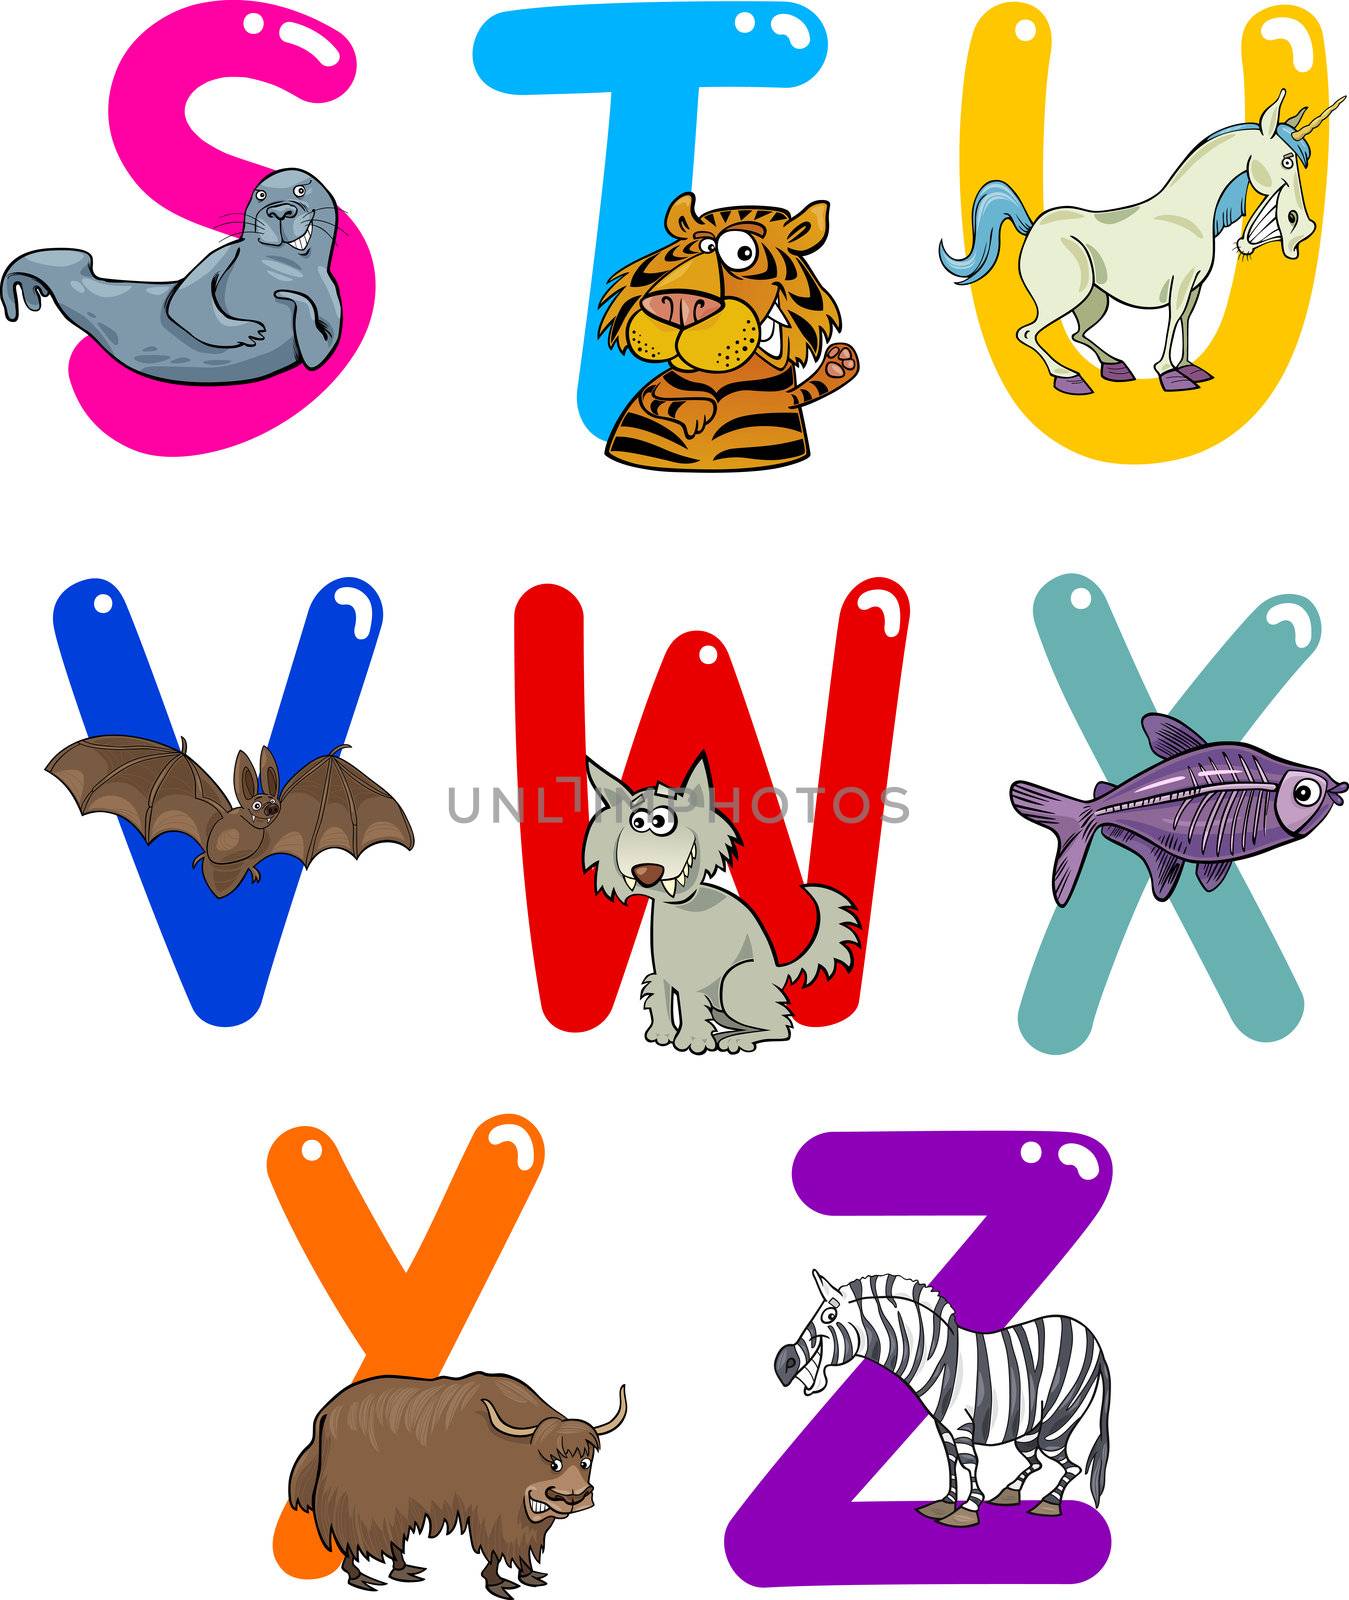 Cartoon Alphabet with Animals by izakowski